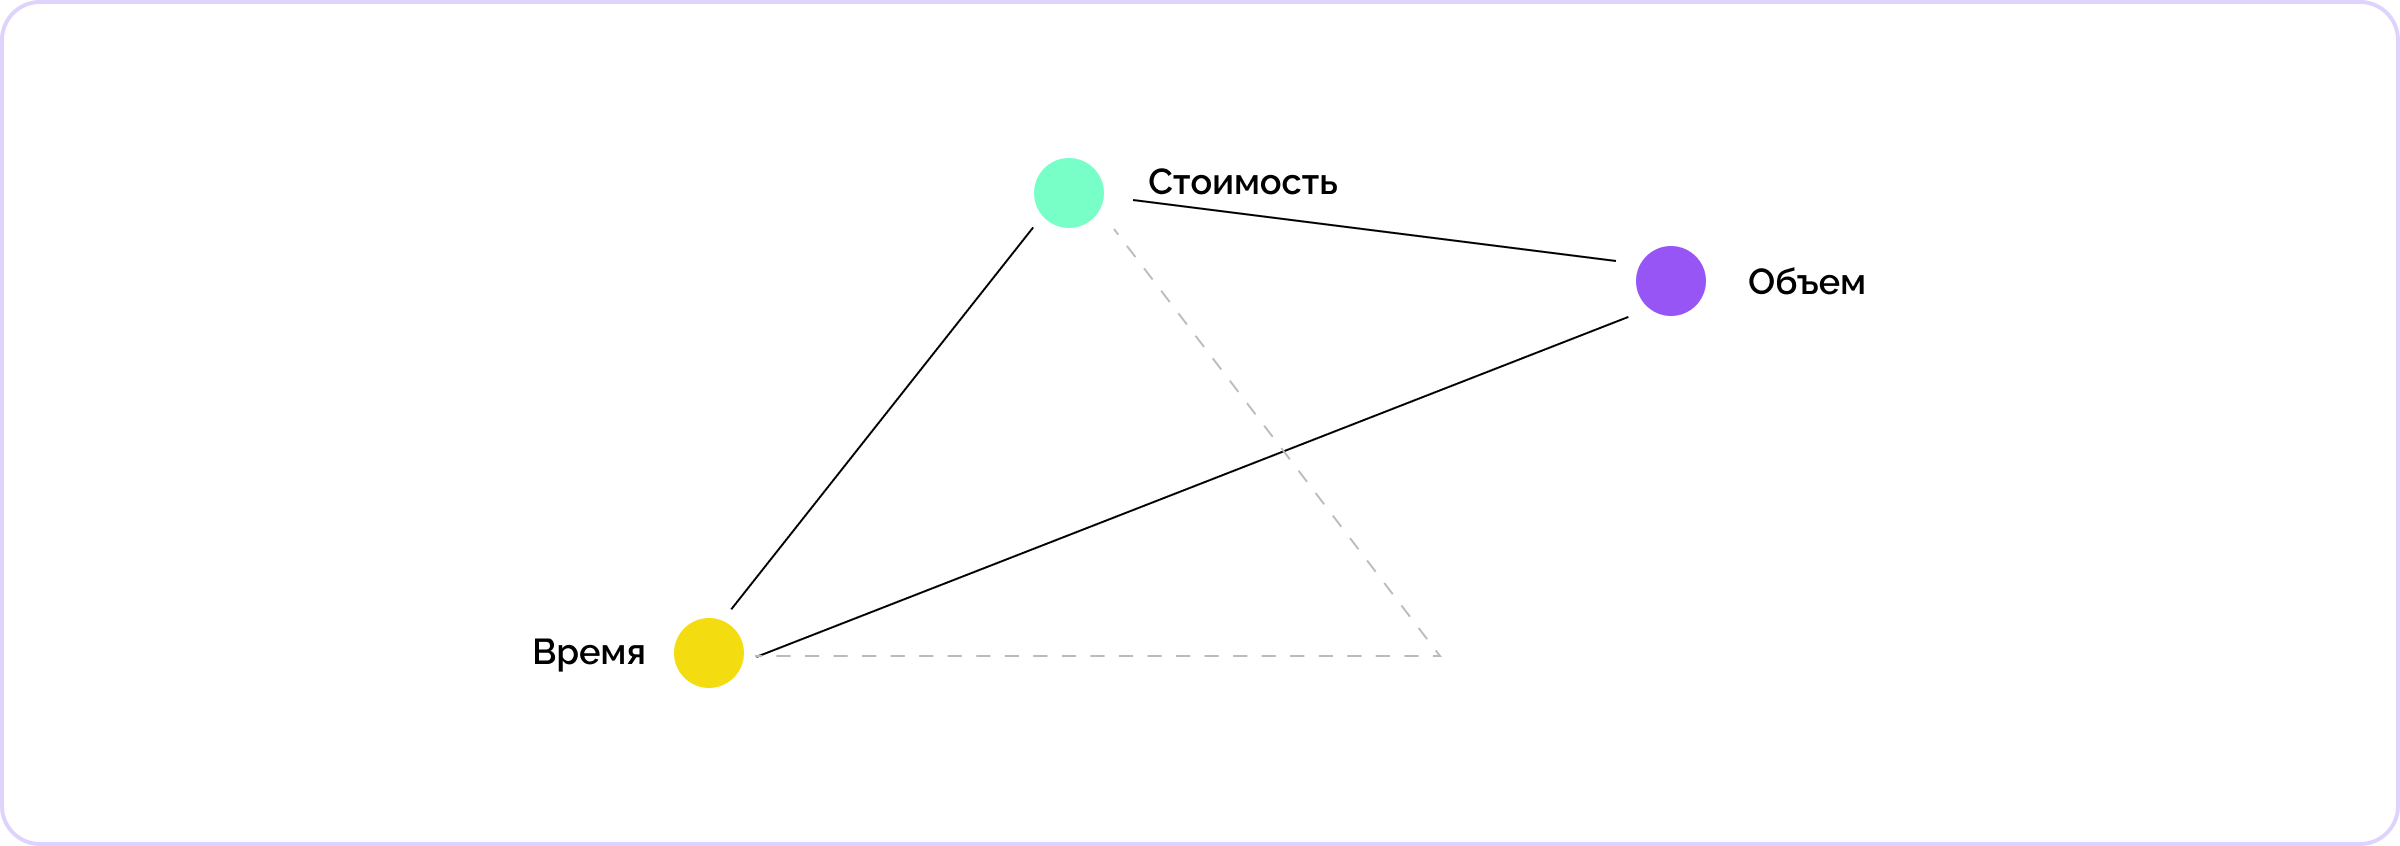 Пример изменения составляющих проектного треугольника